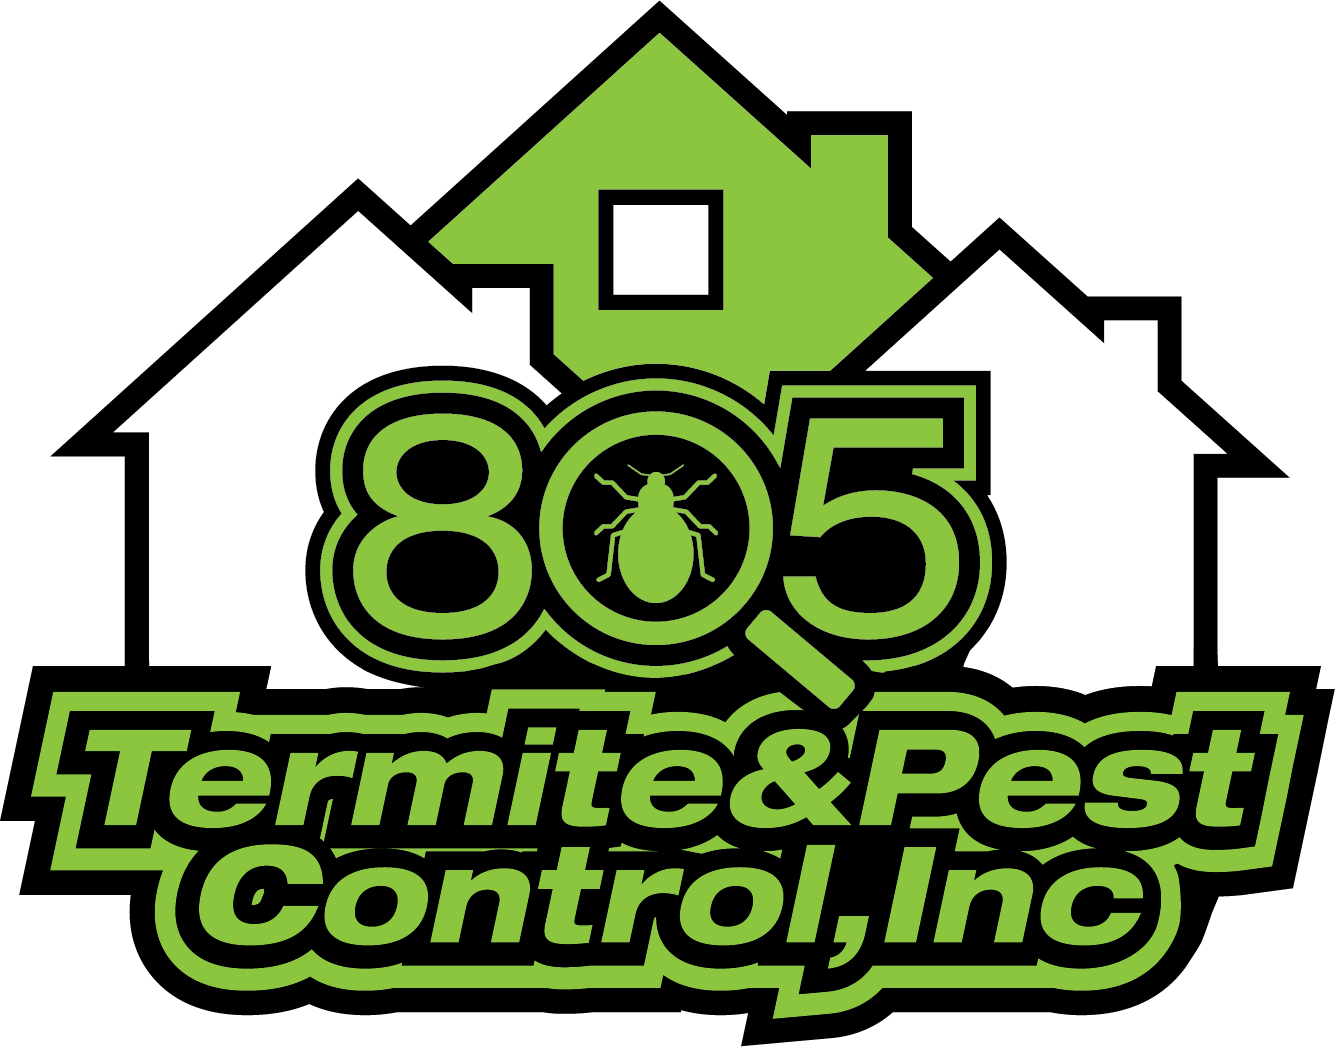 805 Termite Control